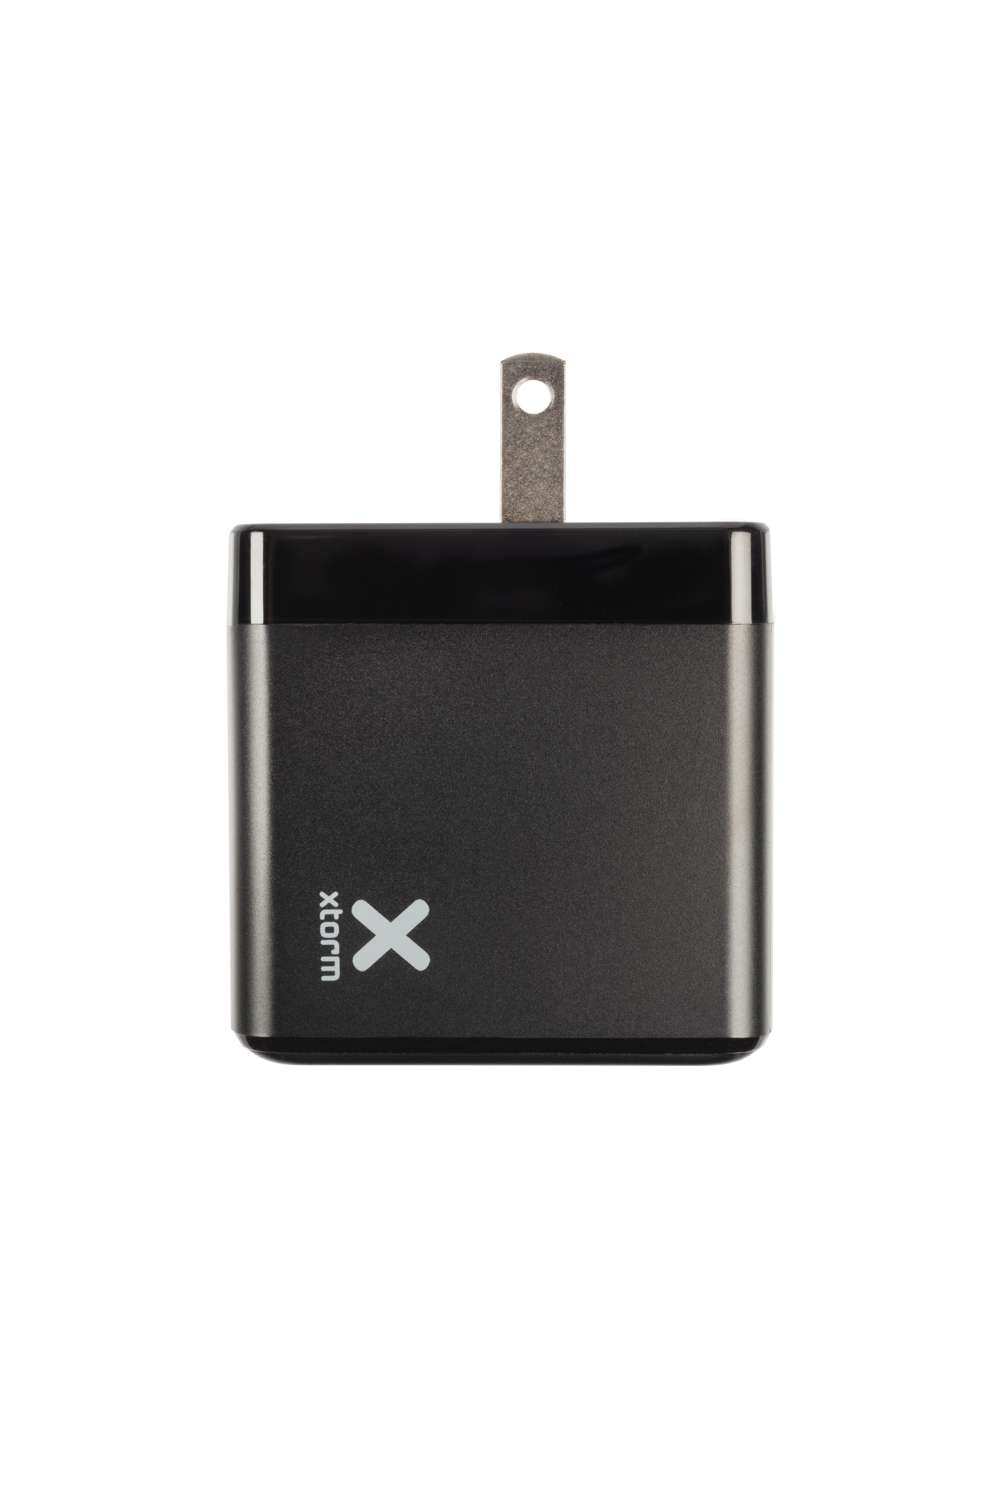 Xtorm Xtorm XA031 Volt USB-C PD Laptop Charge Bundle 65 W